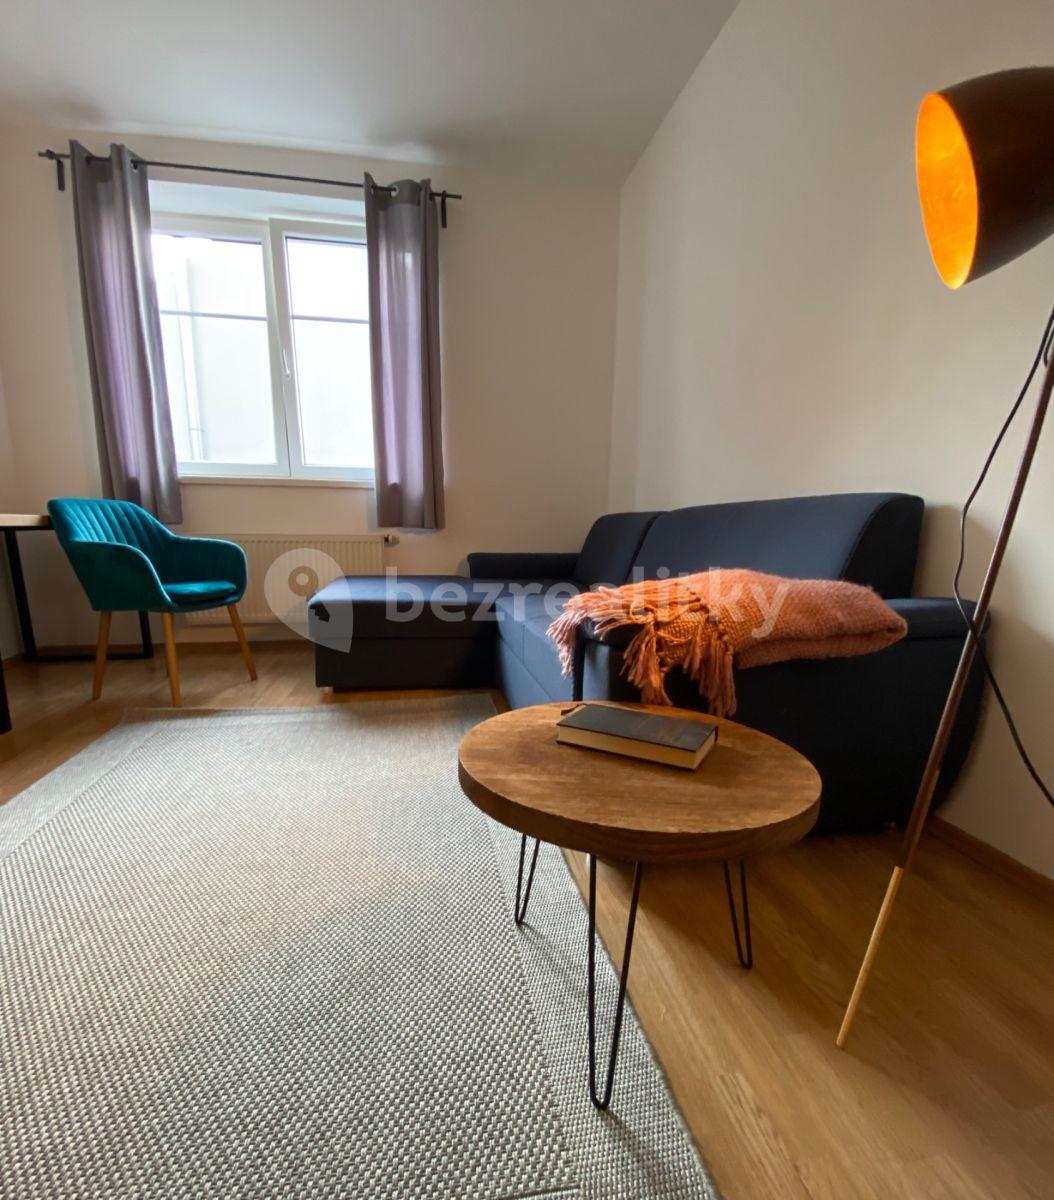 1 bedroom with open-plan kitchen flat to rent, 45 m², Hrušovanské náměstí, Prague, Prague